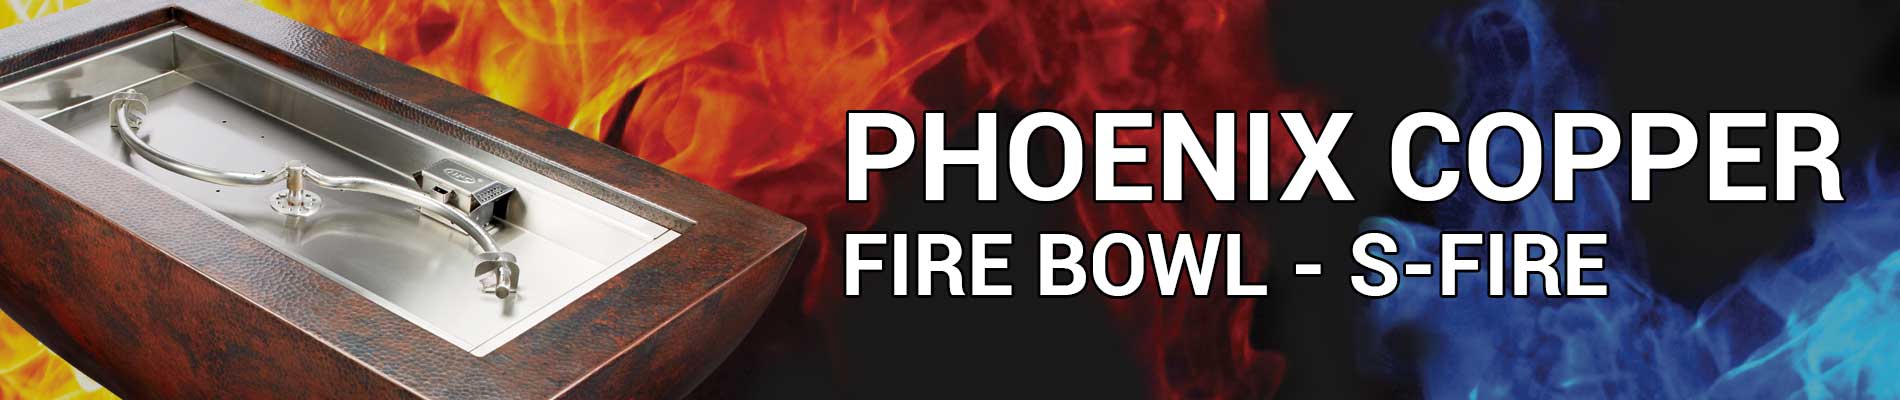 Phoenix S-Burner Banner